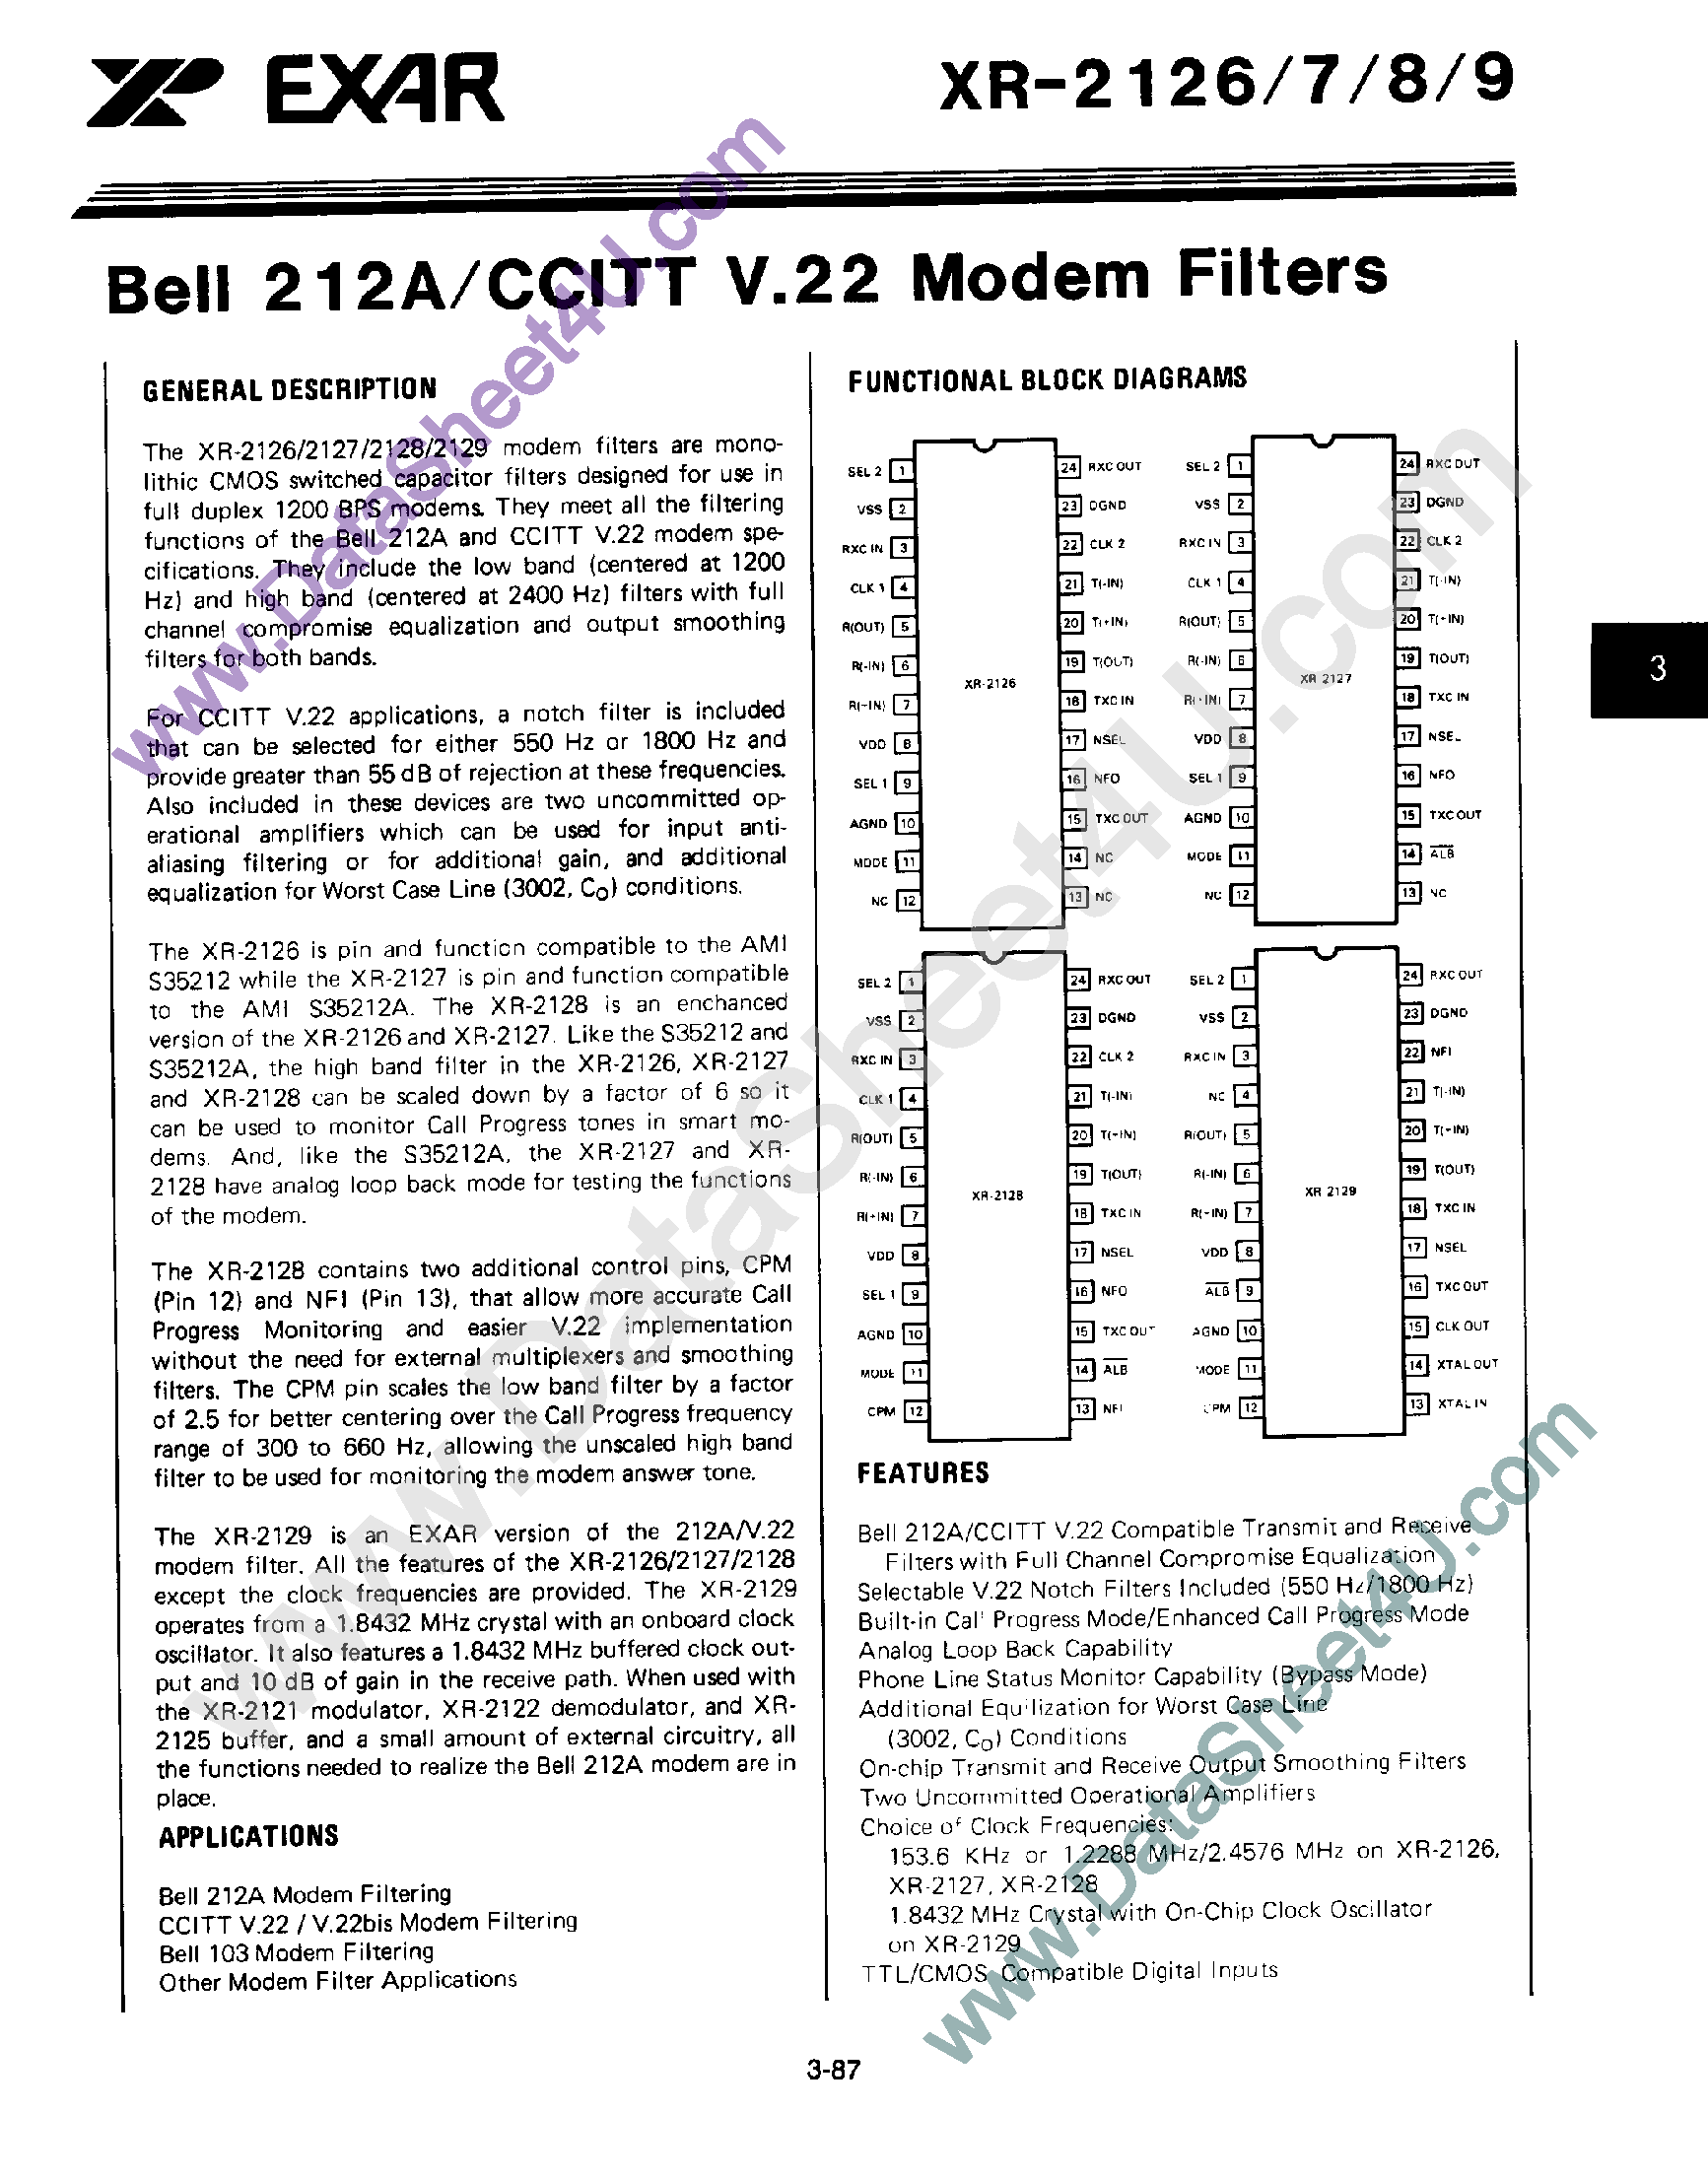 Datasheet XR2127 - Bell 212A / CCITT V.22 Modem Filters page 1